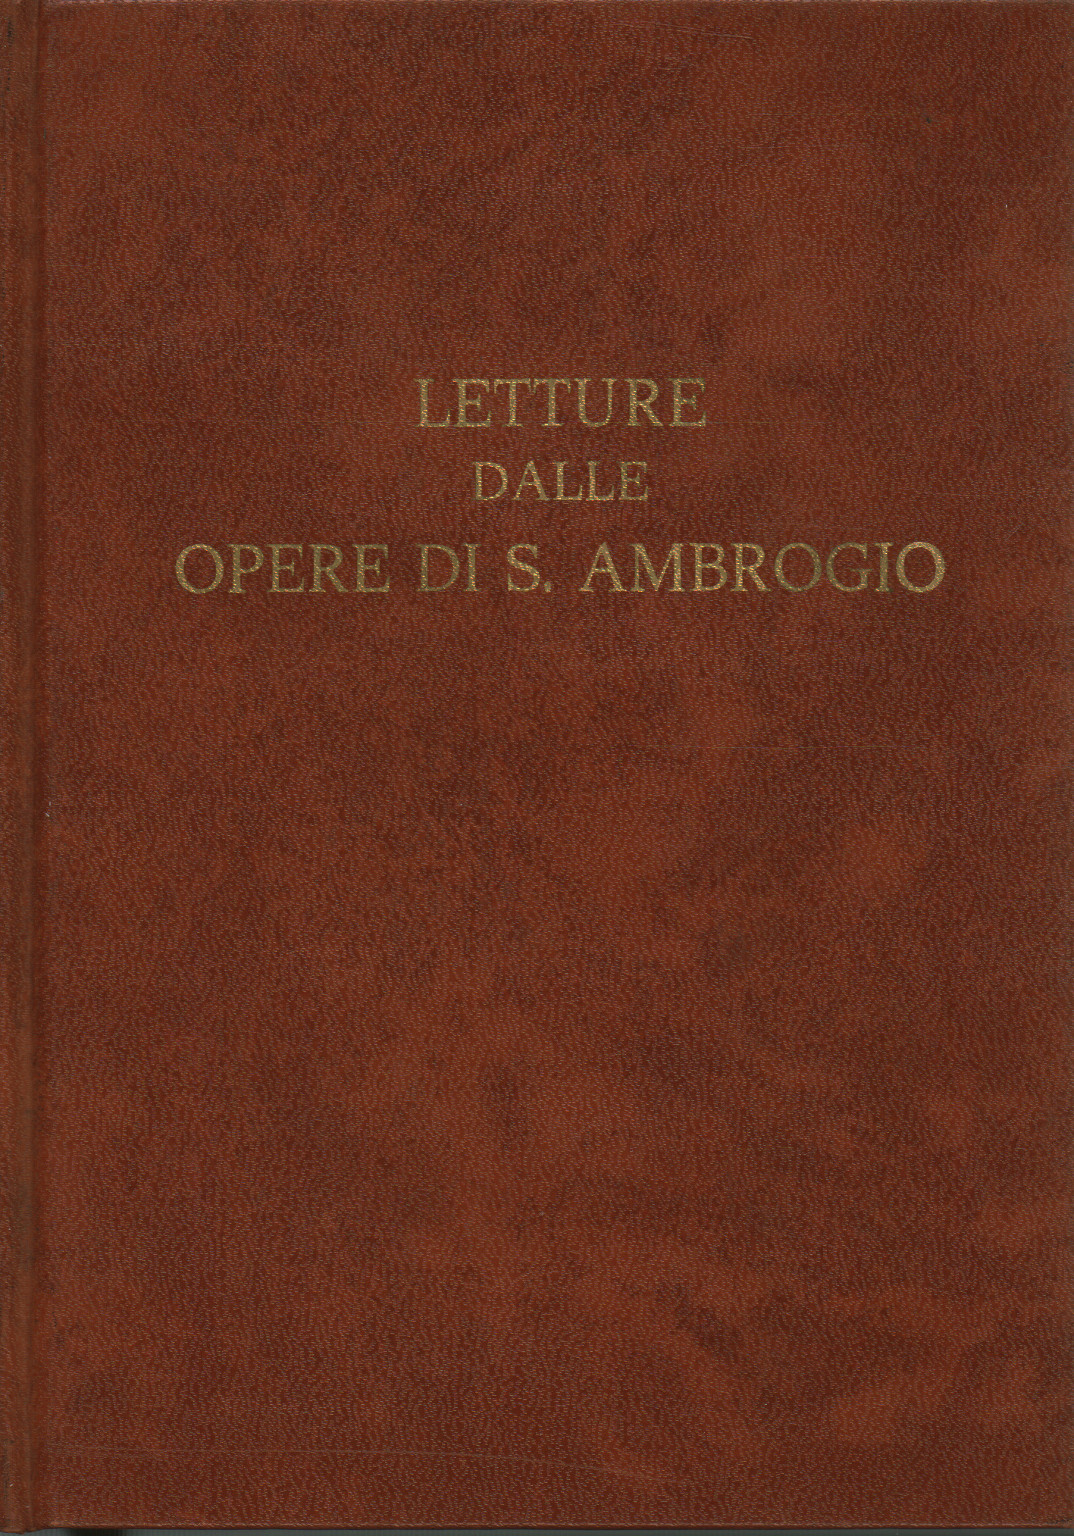 Letture dalle Opere di S.Ambrogio, s.a.